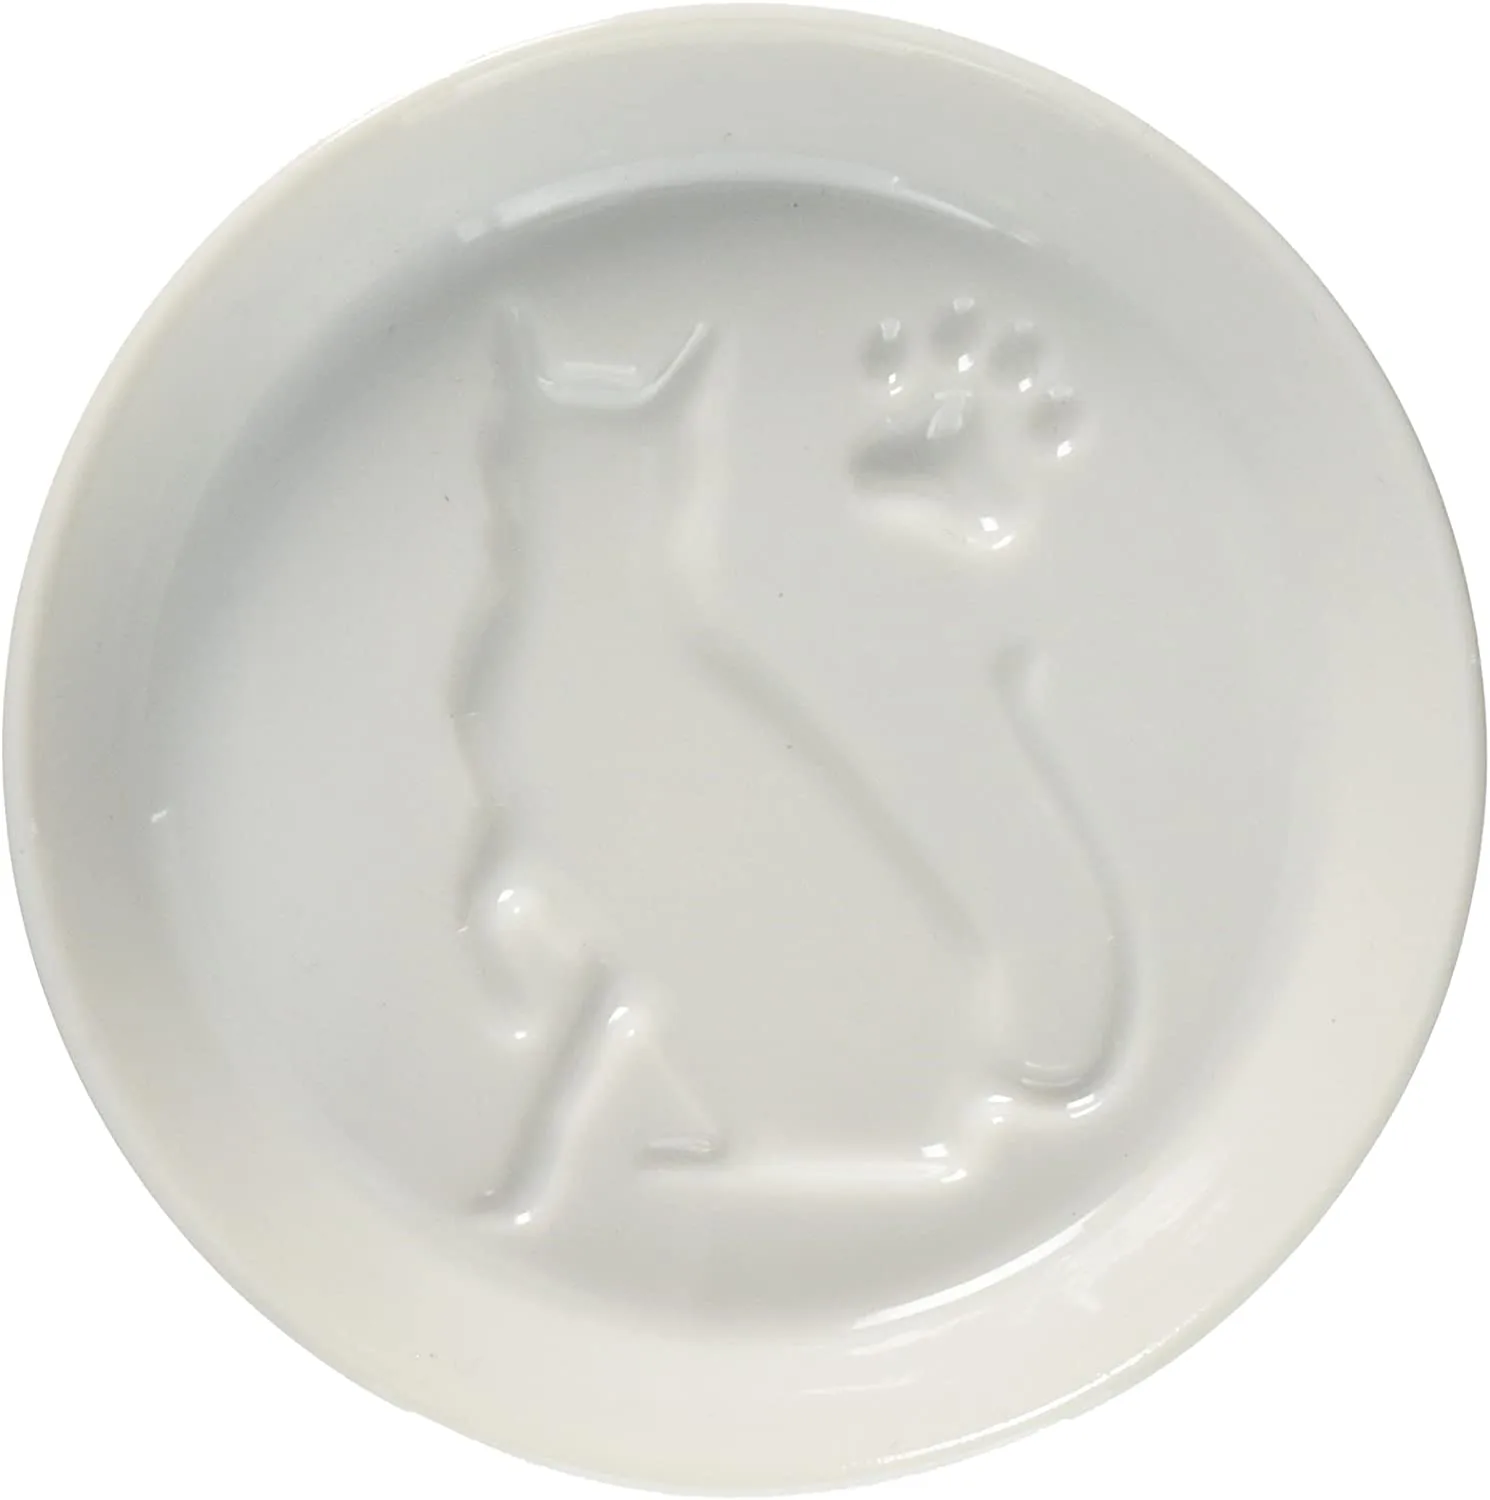 これでお刺身を食べてみたい 醤油を注ぐとかわいい猫が現れるecru エクリュ の小皿 Cat Press キャットプレス